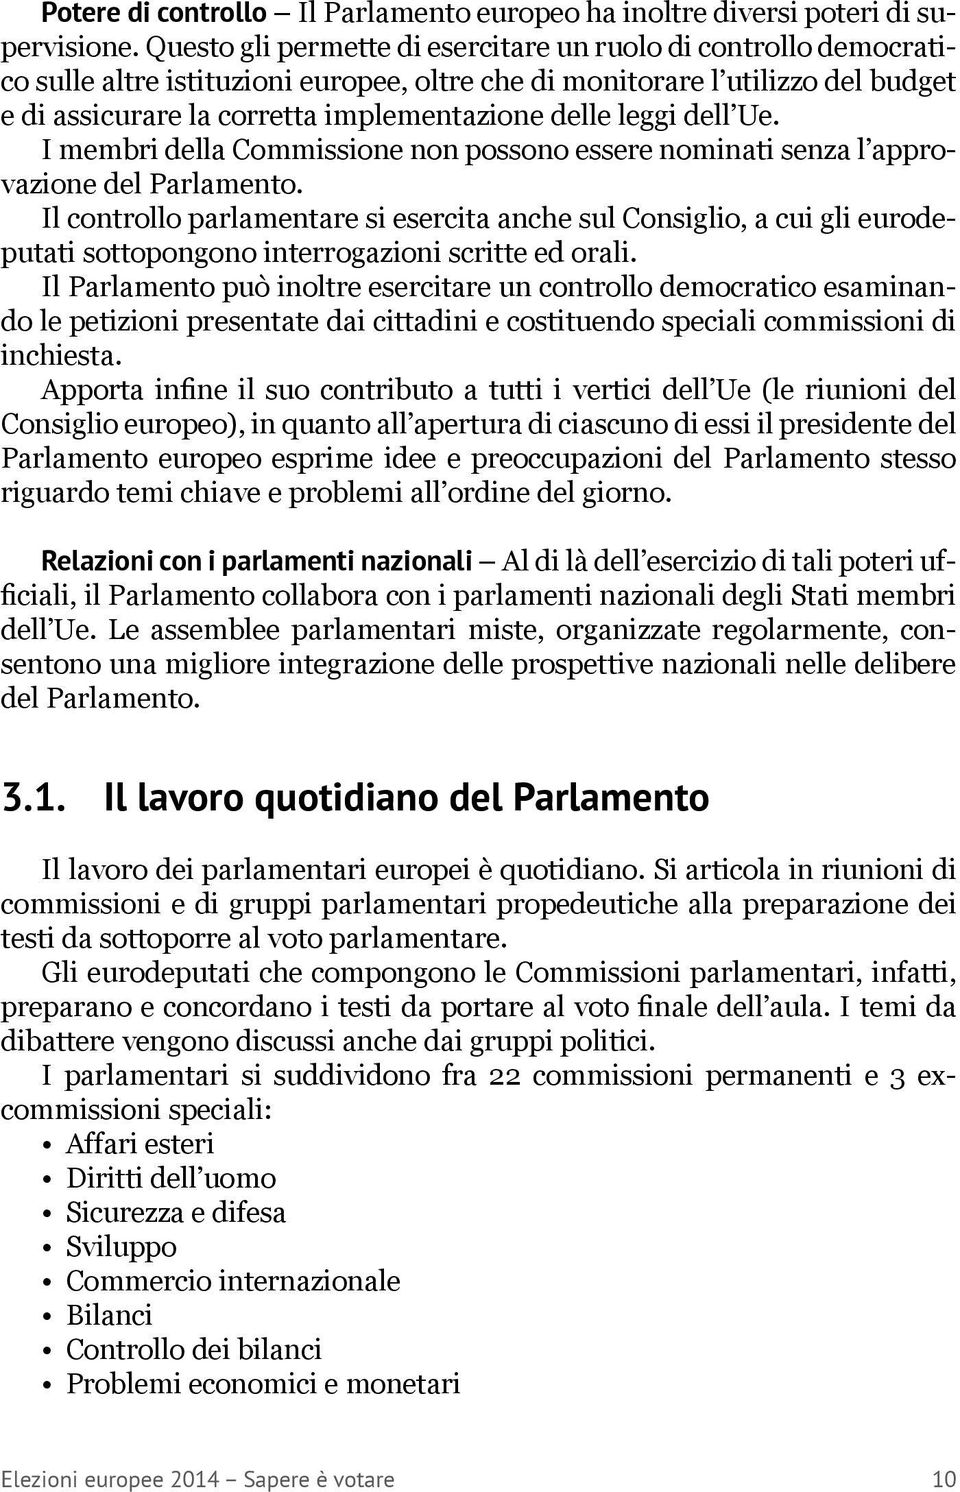 leggi dell Ue. I membri della Commissione non possono essere nominati senza l approvazione del Parlamento.